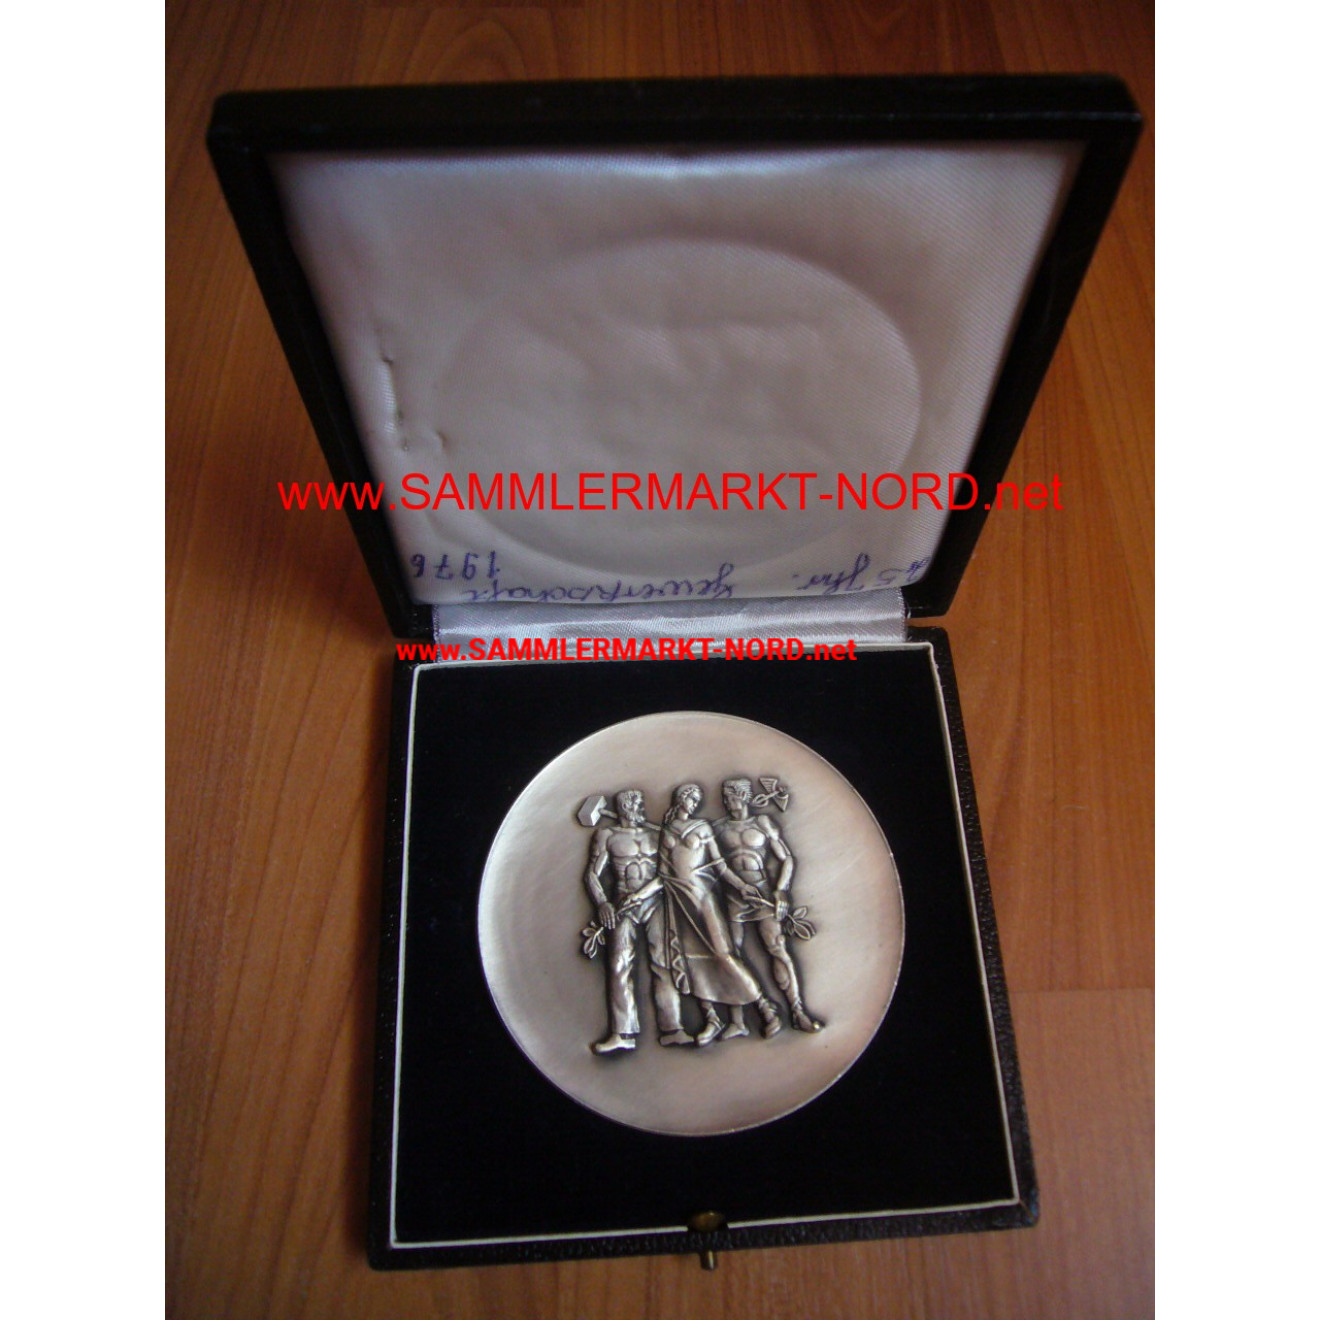 Pfälzer Wirtschaft - Ehrenplakette in Silber